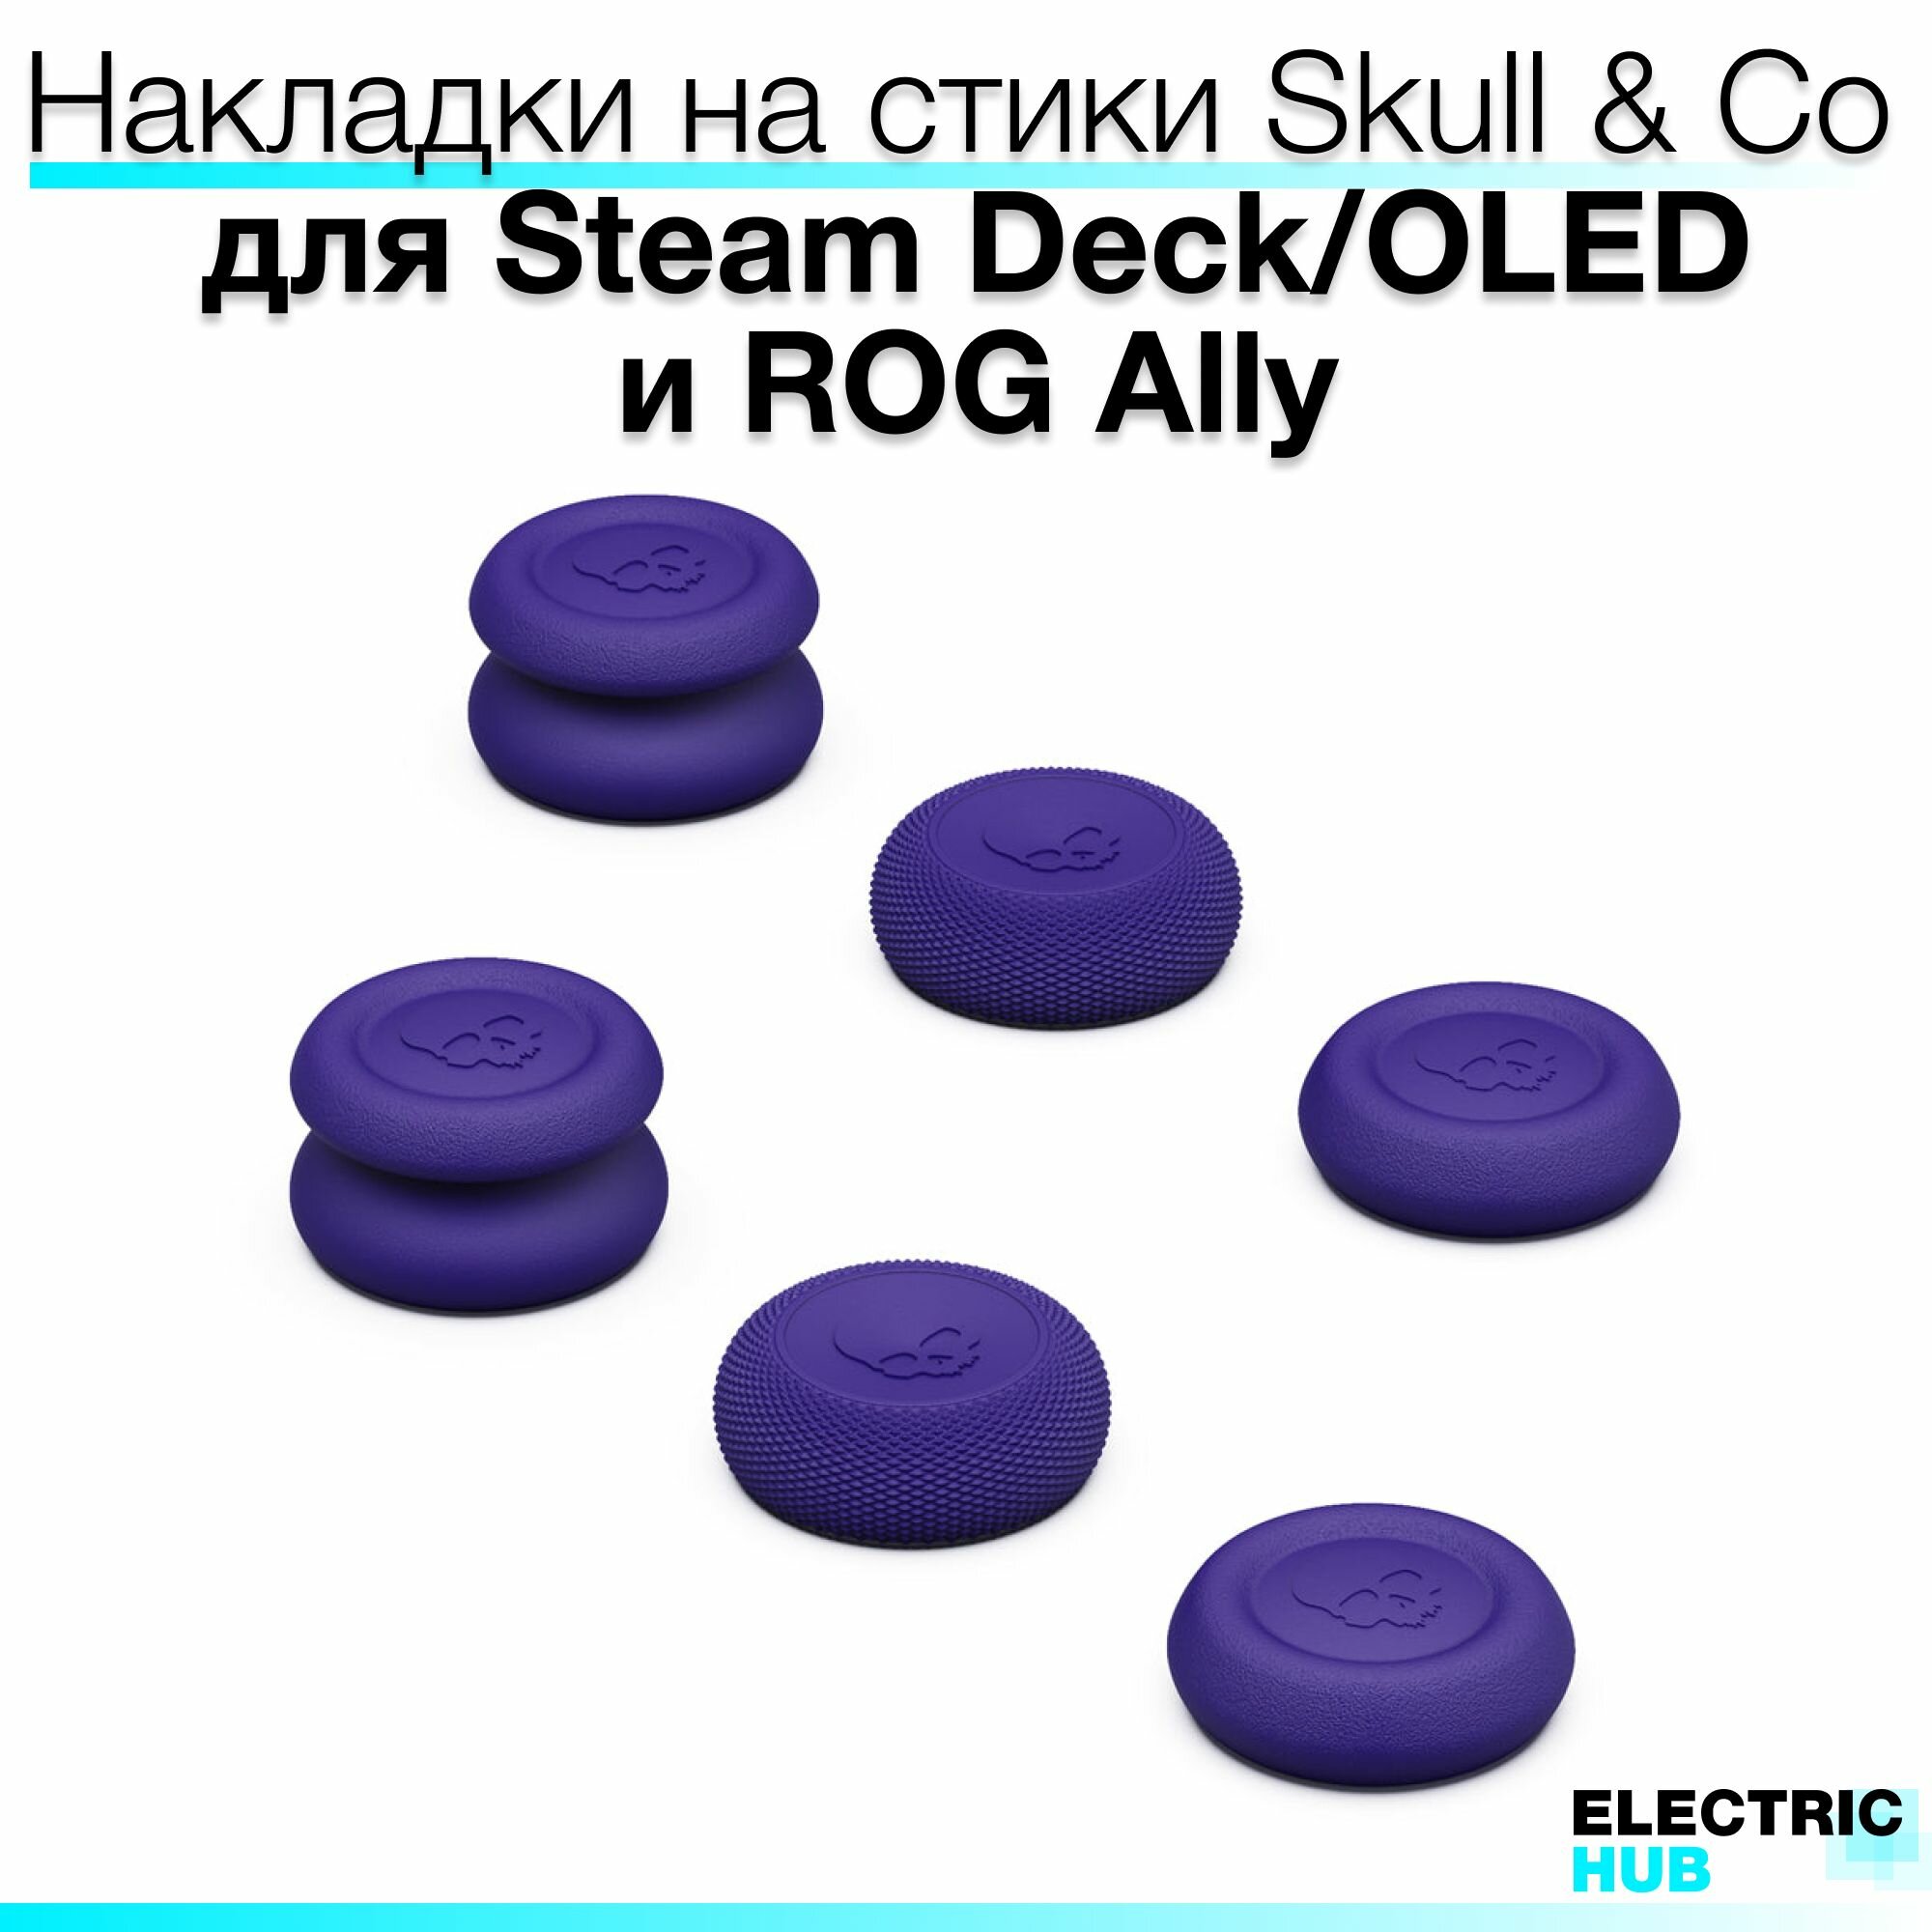 Премиум накладки Skull & Co на стики для консолей Steam Deck/OLED/ROG Ally, комплект из 6 штук, цвет Фиолетовый (Galactic Purple)